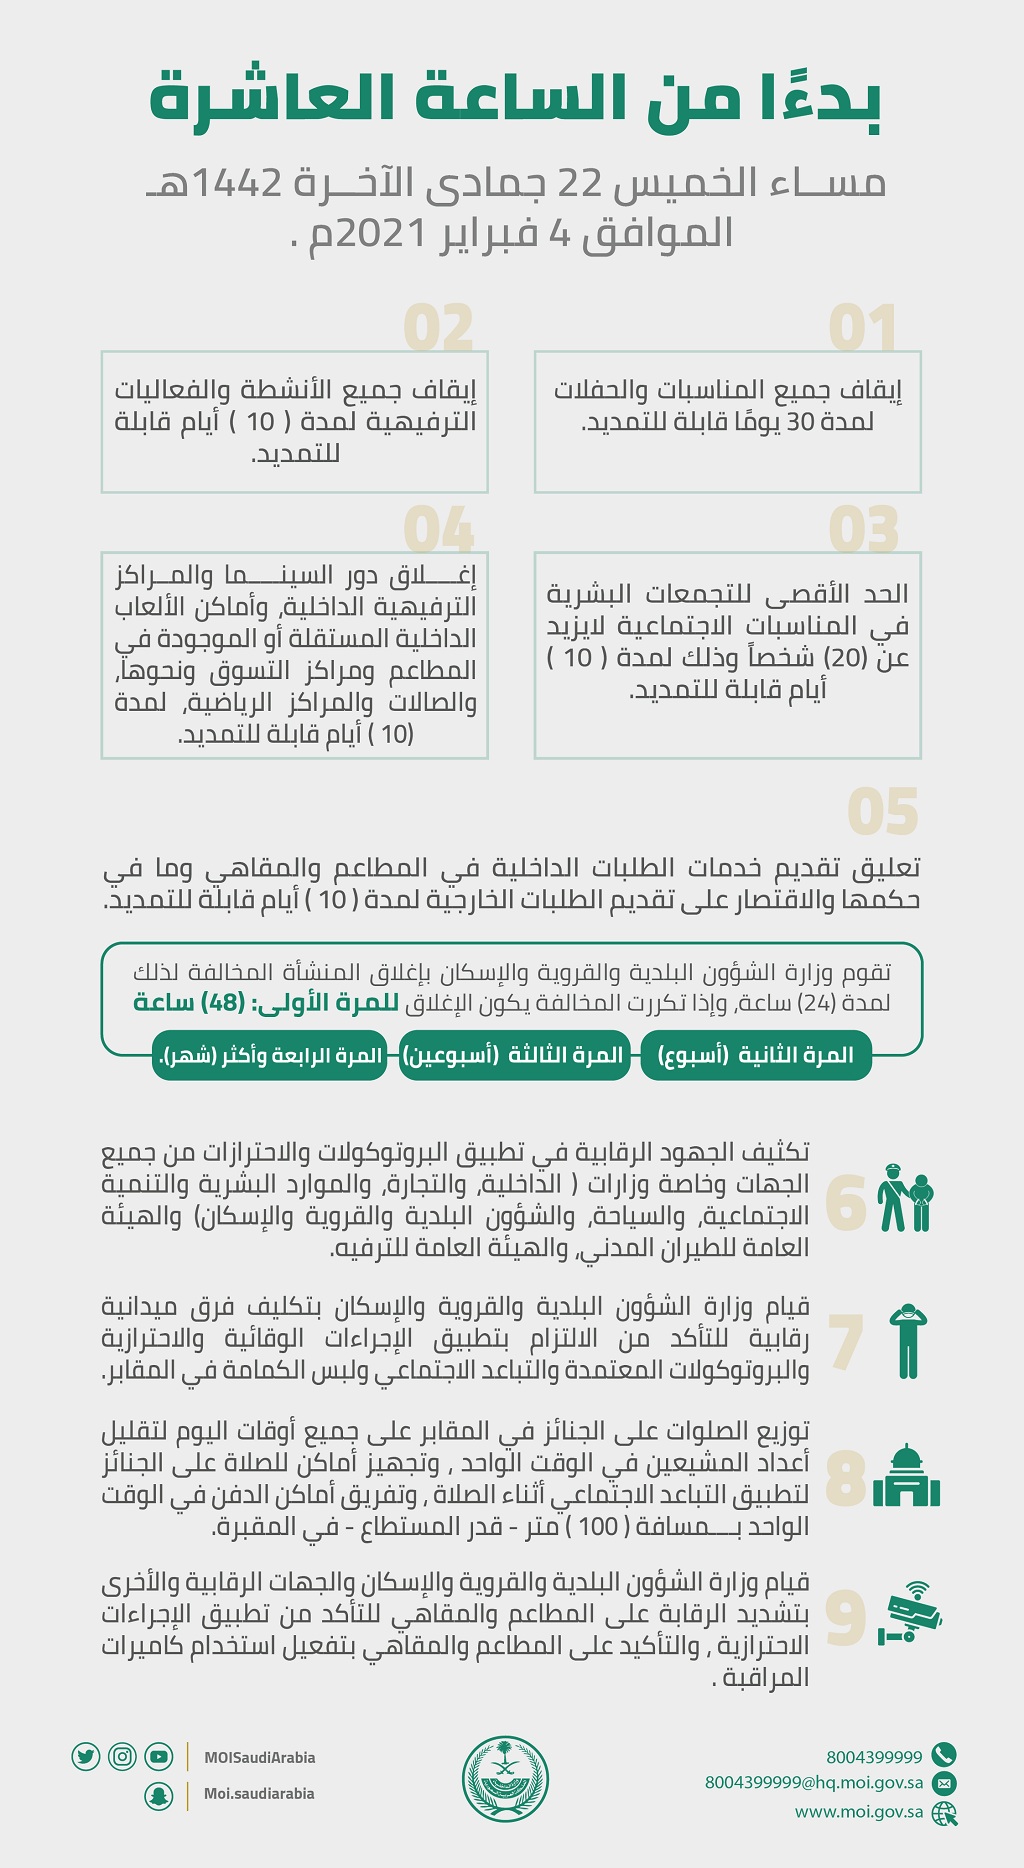 اخر قرارات وزارة الداخلية السعودية